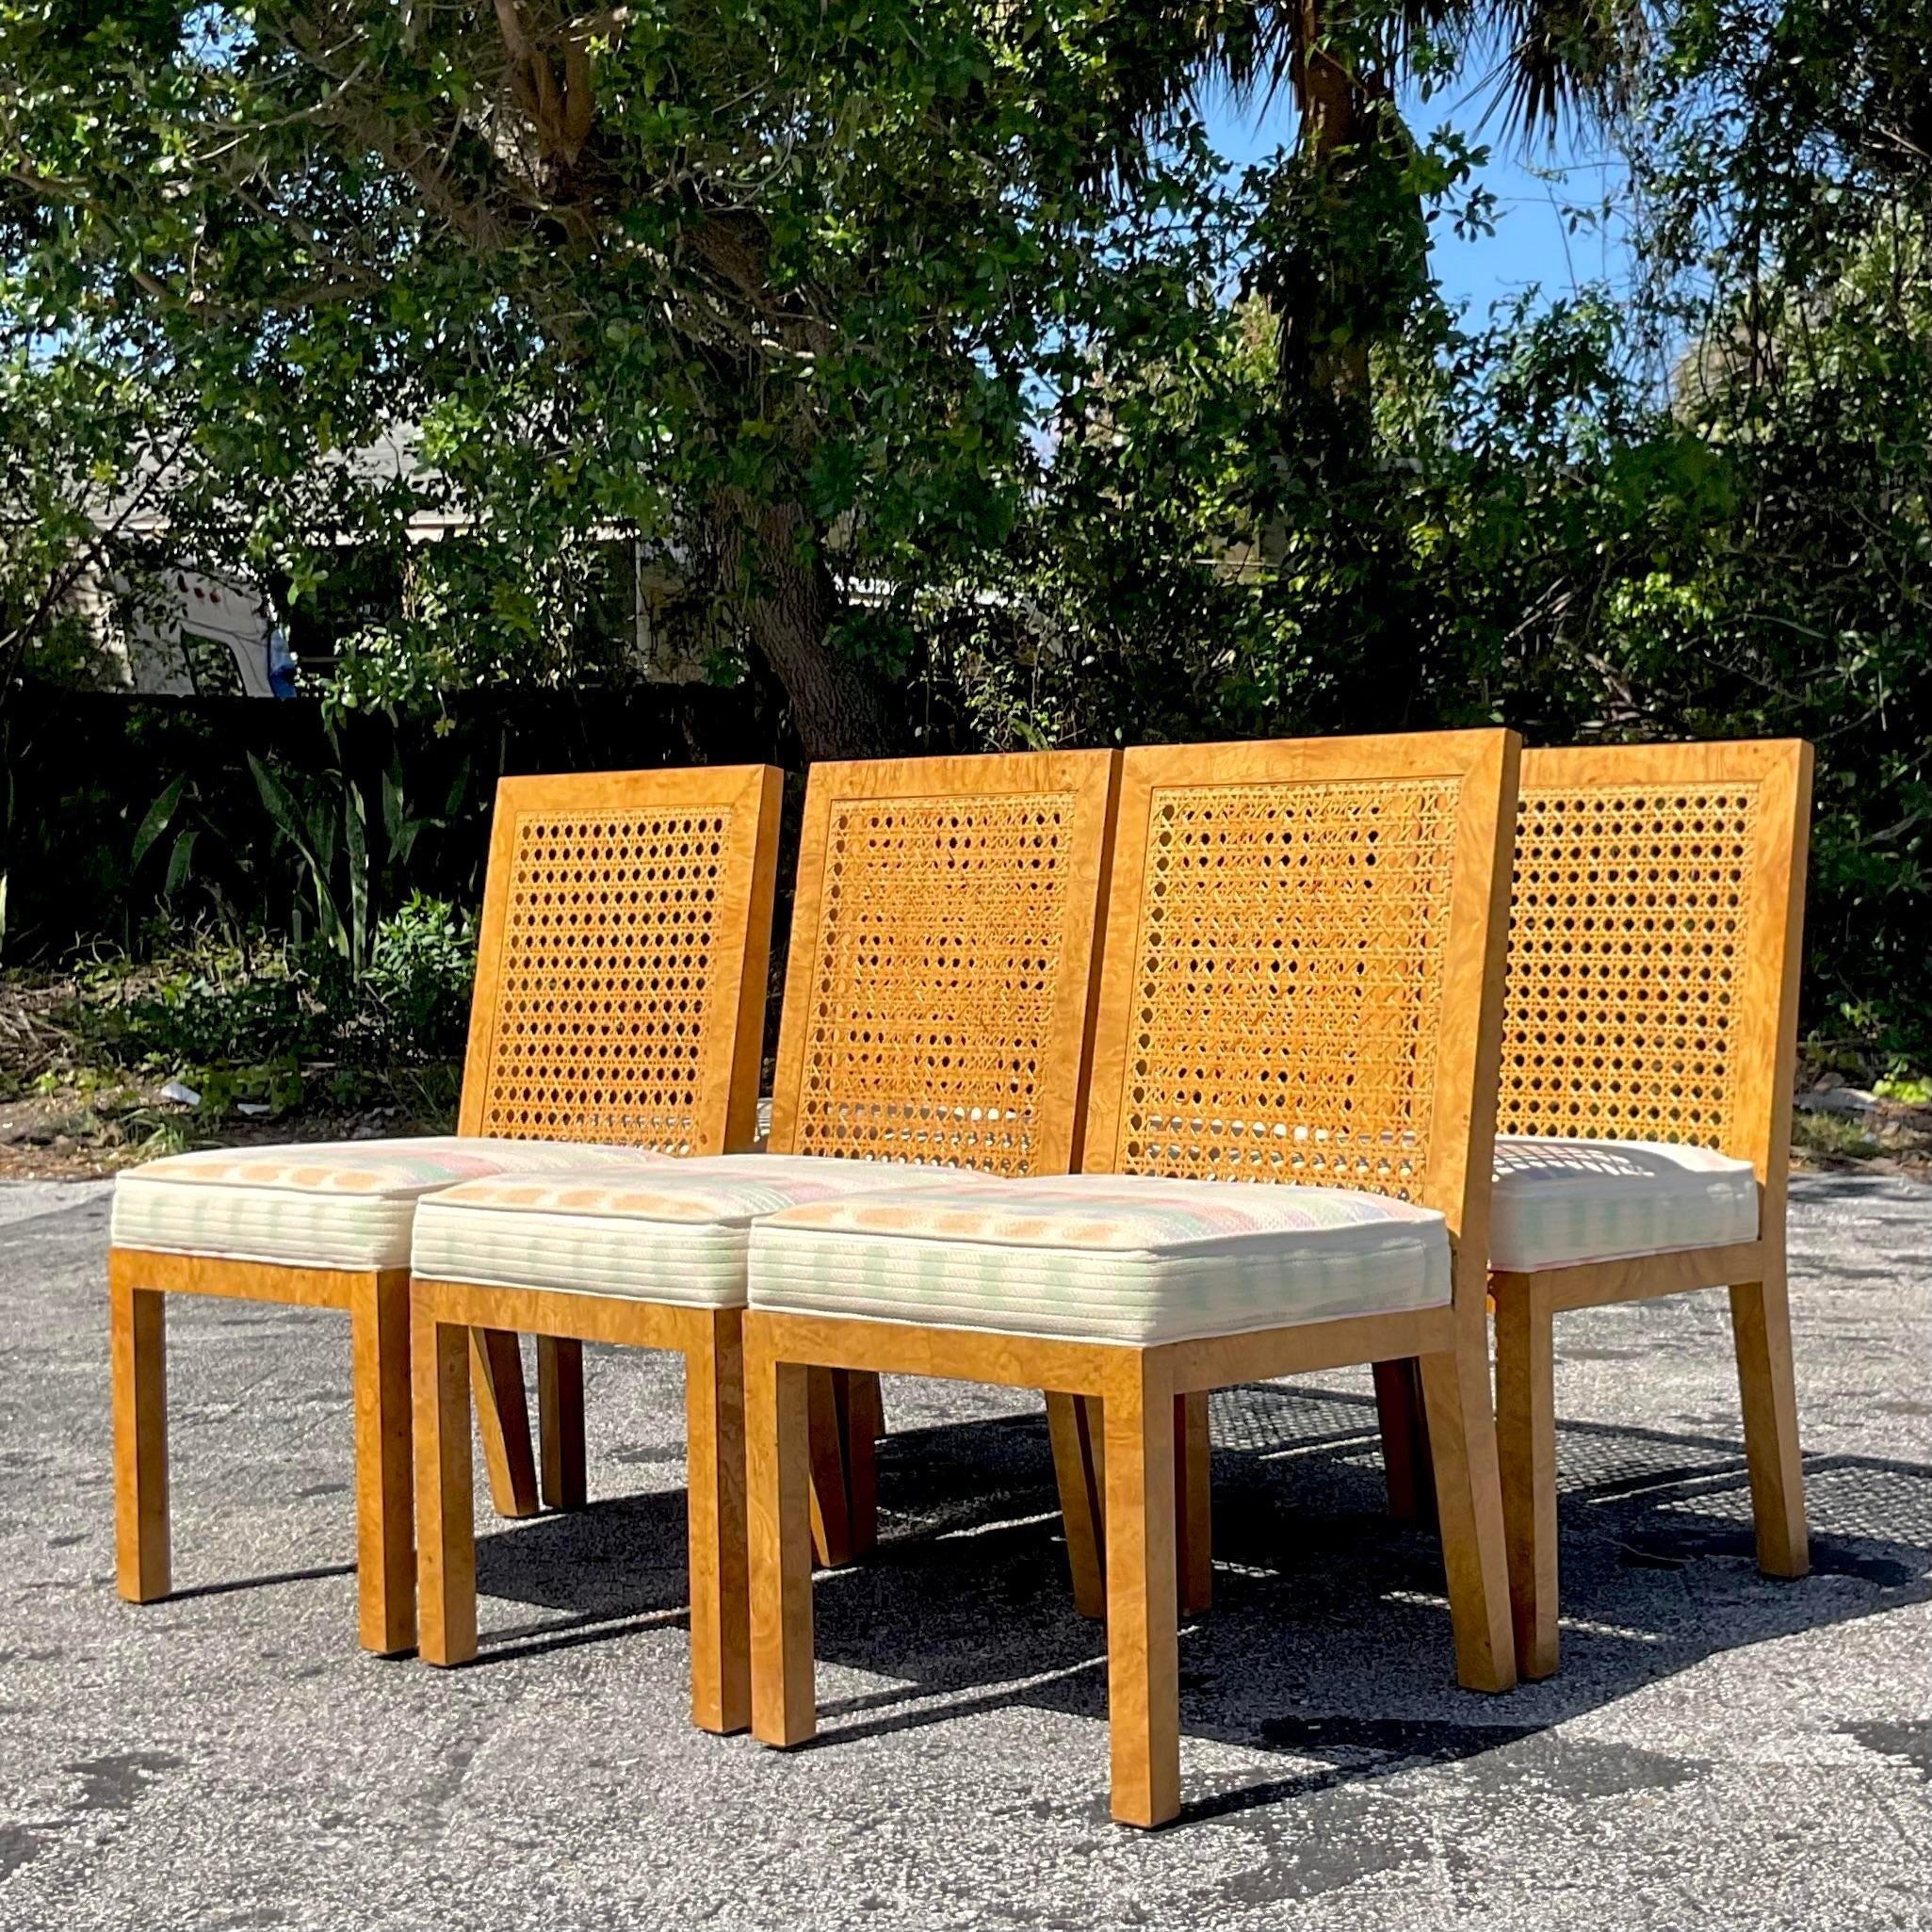 Plongez dans le charme bohème de l'artisanat américain avec cet ensemble de 6 chaises de salle à manger Vintage Boho en bois de canne et de ronce, inspiré par Widdicomb. Chaque chaise est méticuleusement fabriquée avec un mélange de bois de canne et